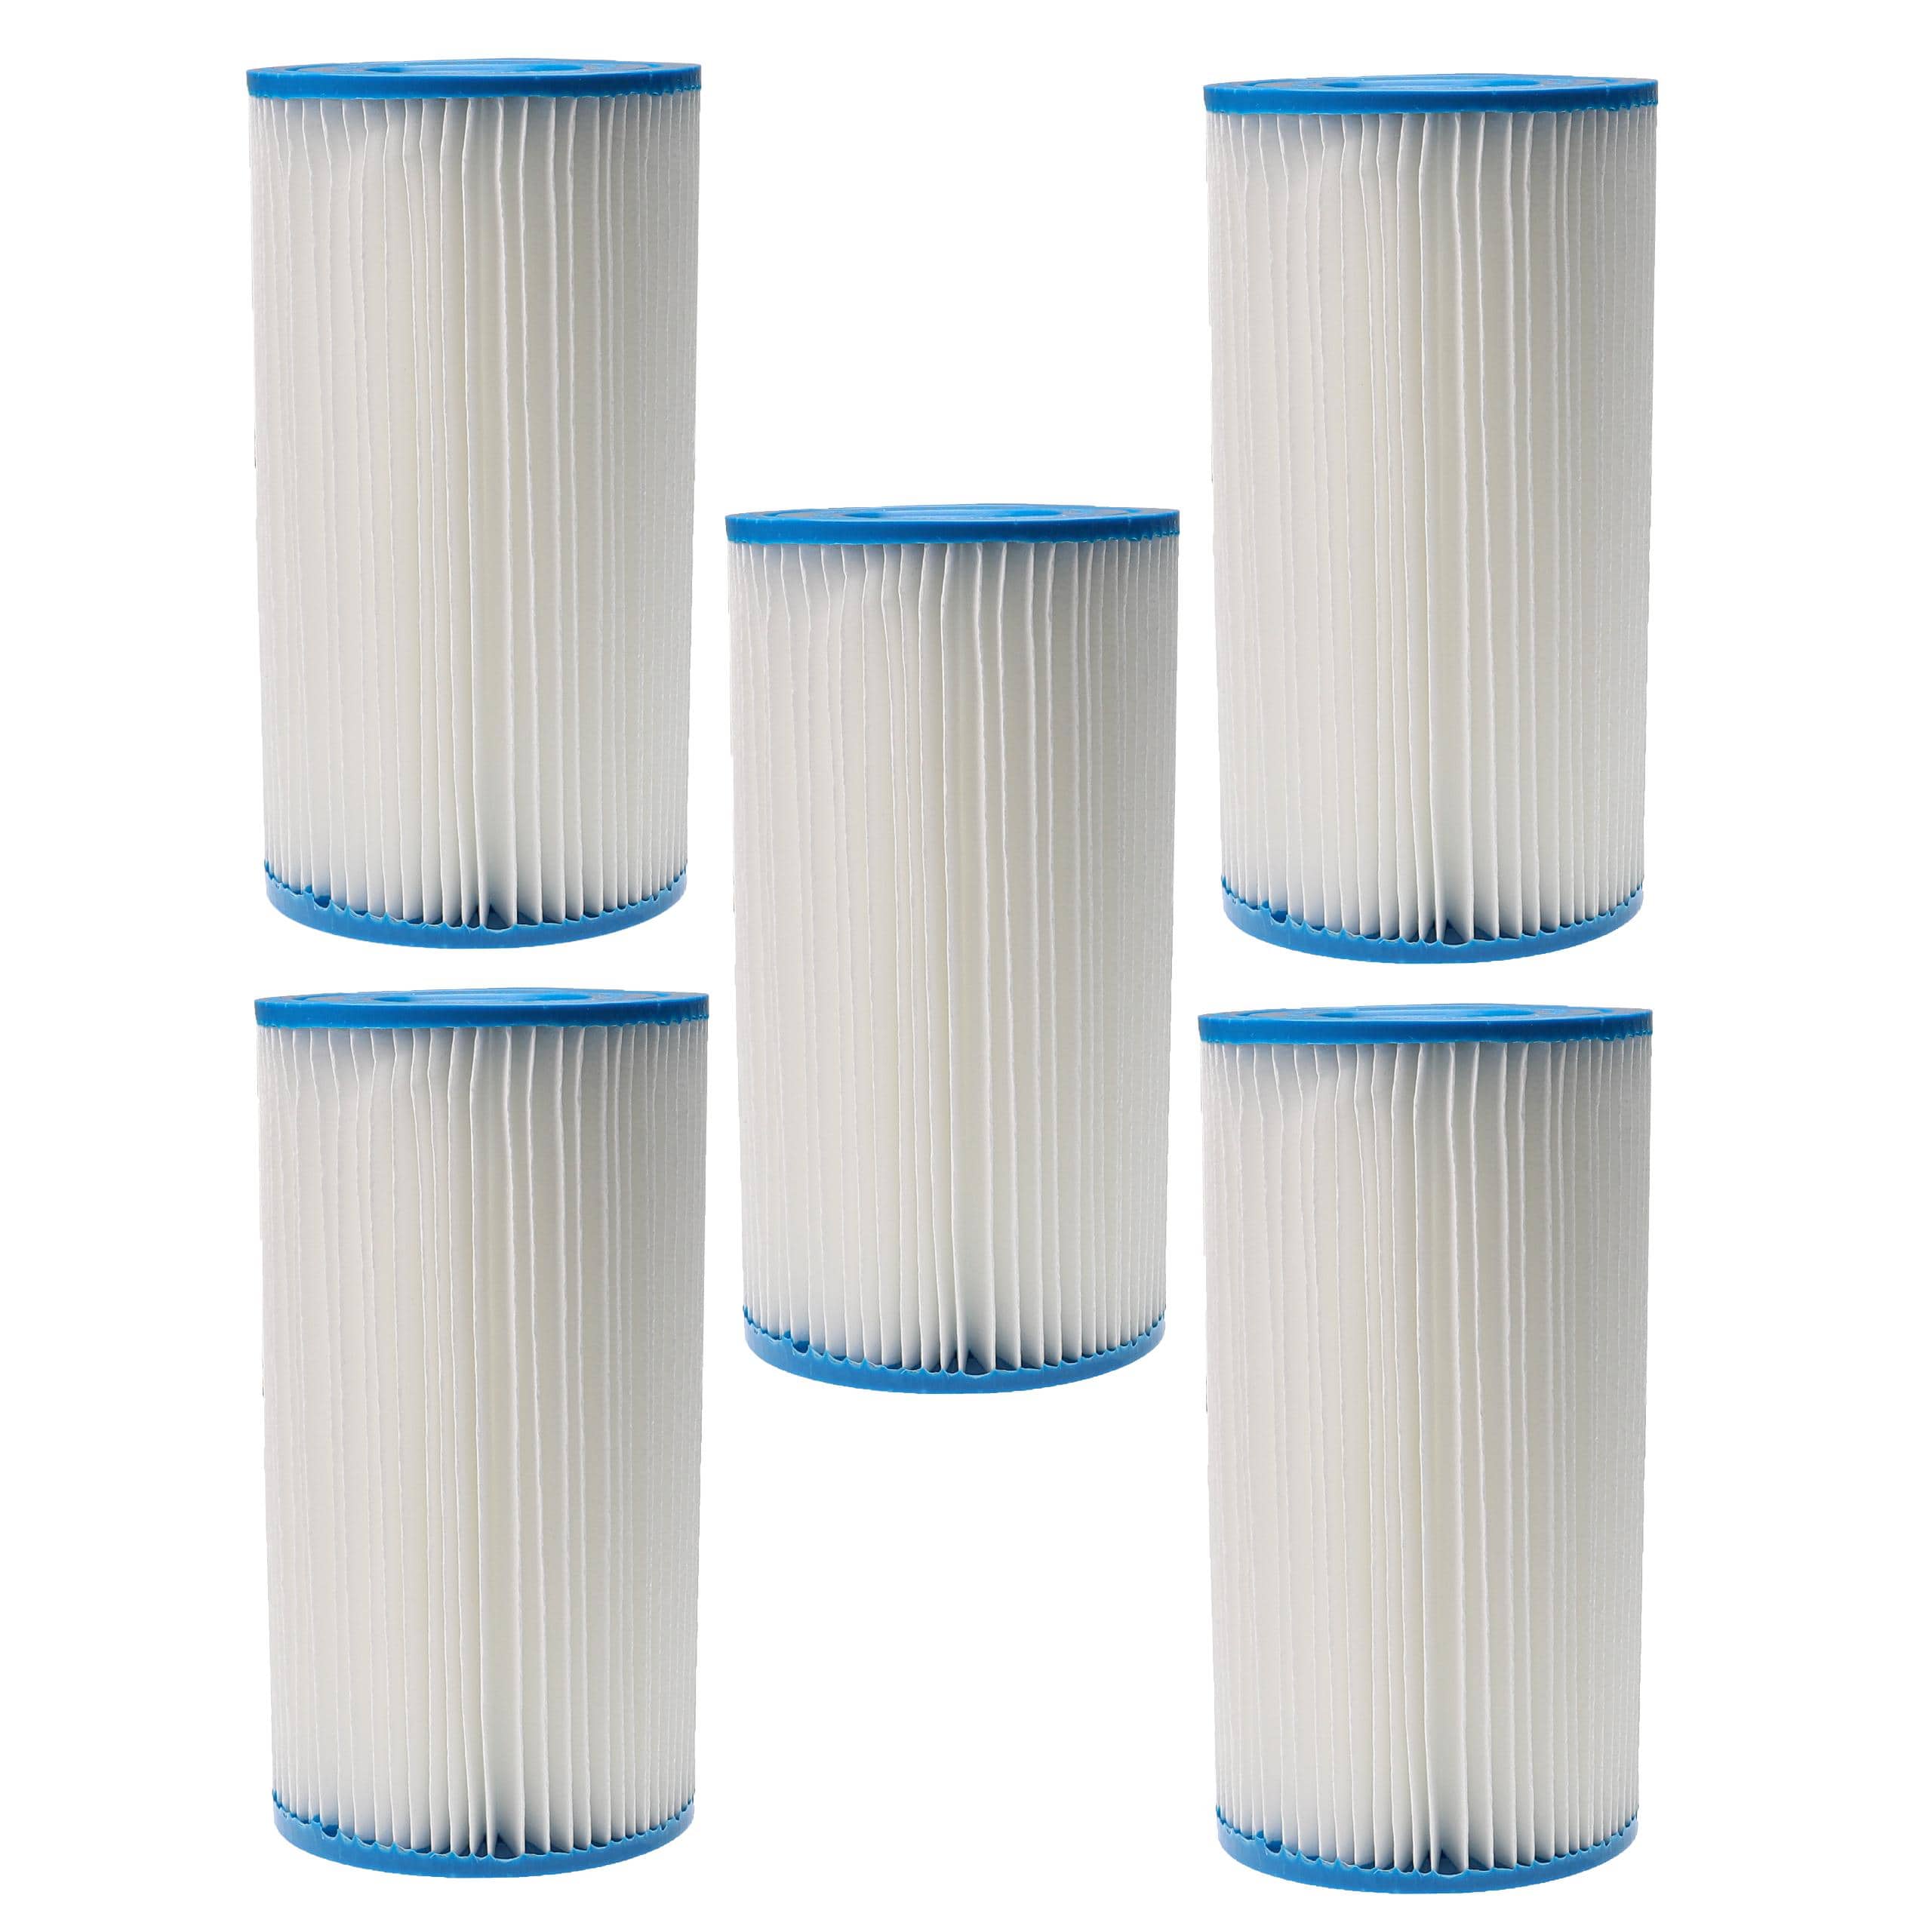 5x Filtres à eau remplace Intex filtre type A pour piscine, pompe de filtration Intex - Cartouche filtre